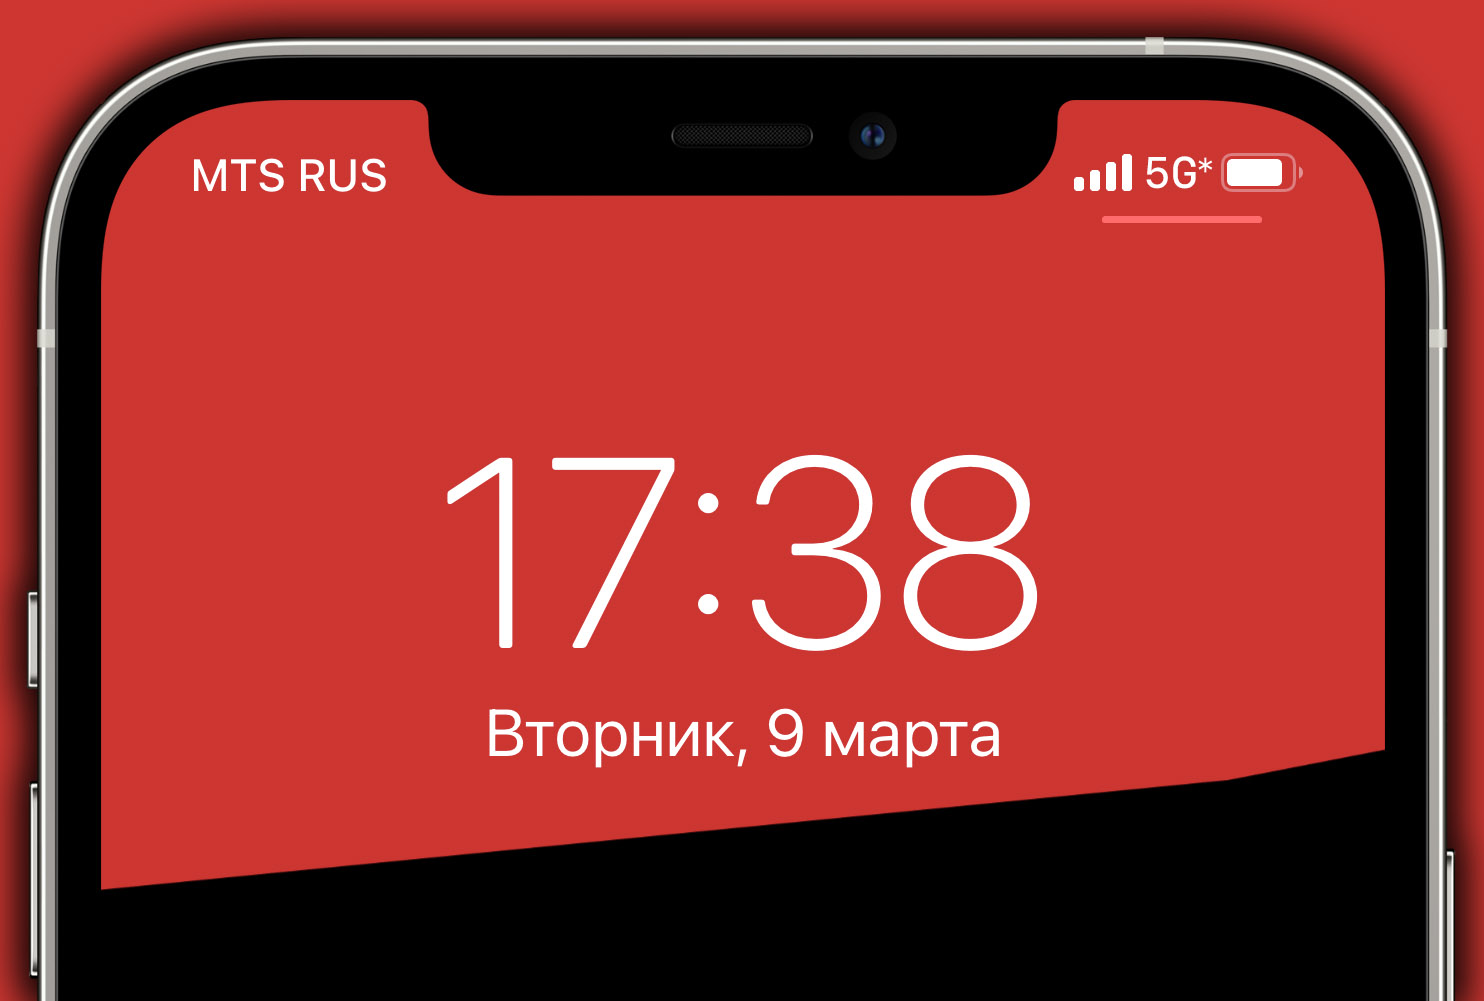 Да, МТС громко запустила тестовую сеть 5G в Москве. Чуда не случилось